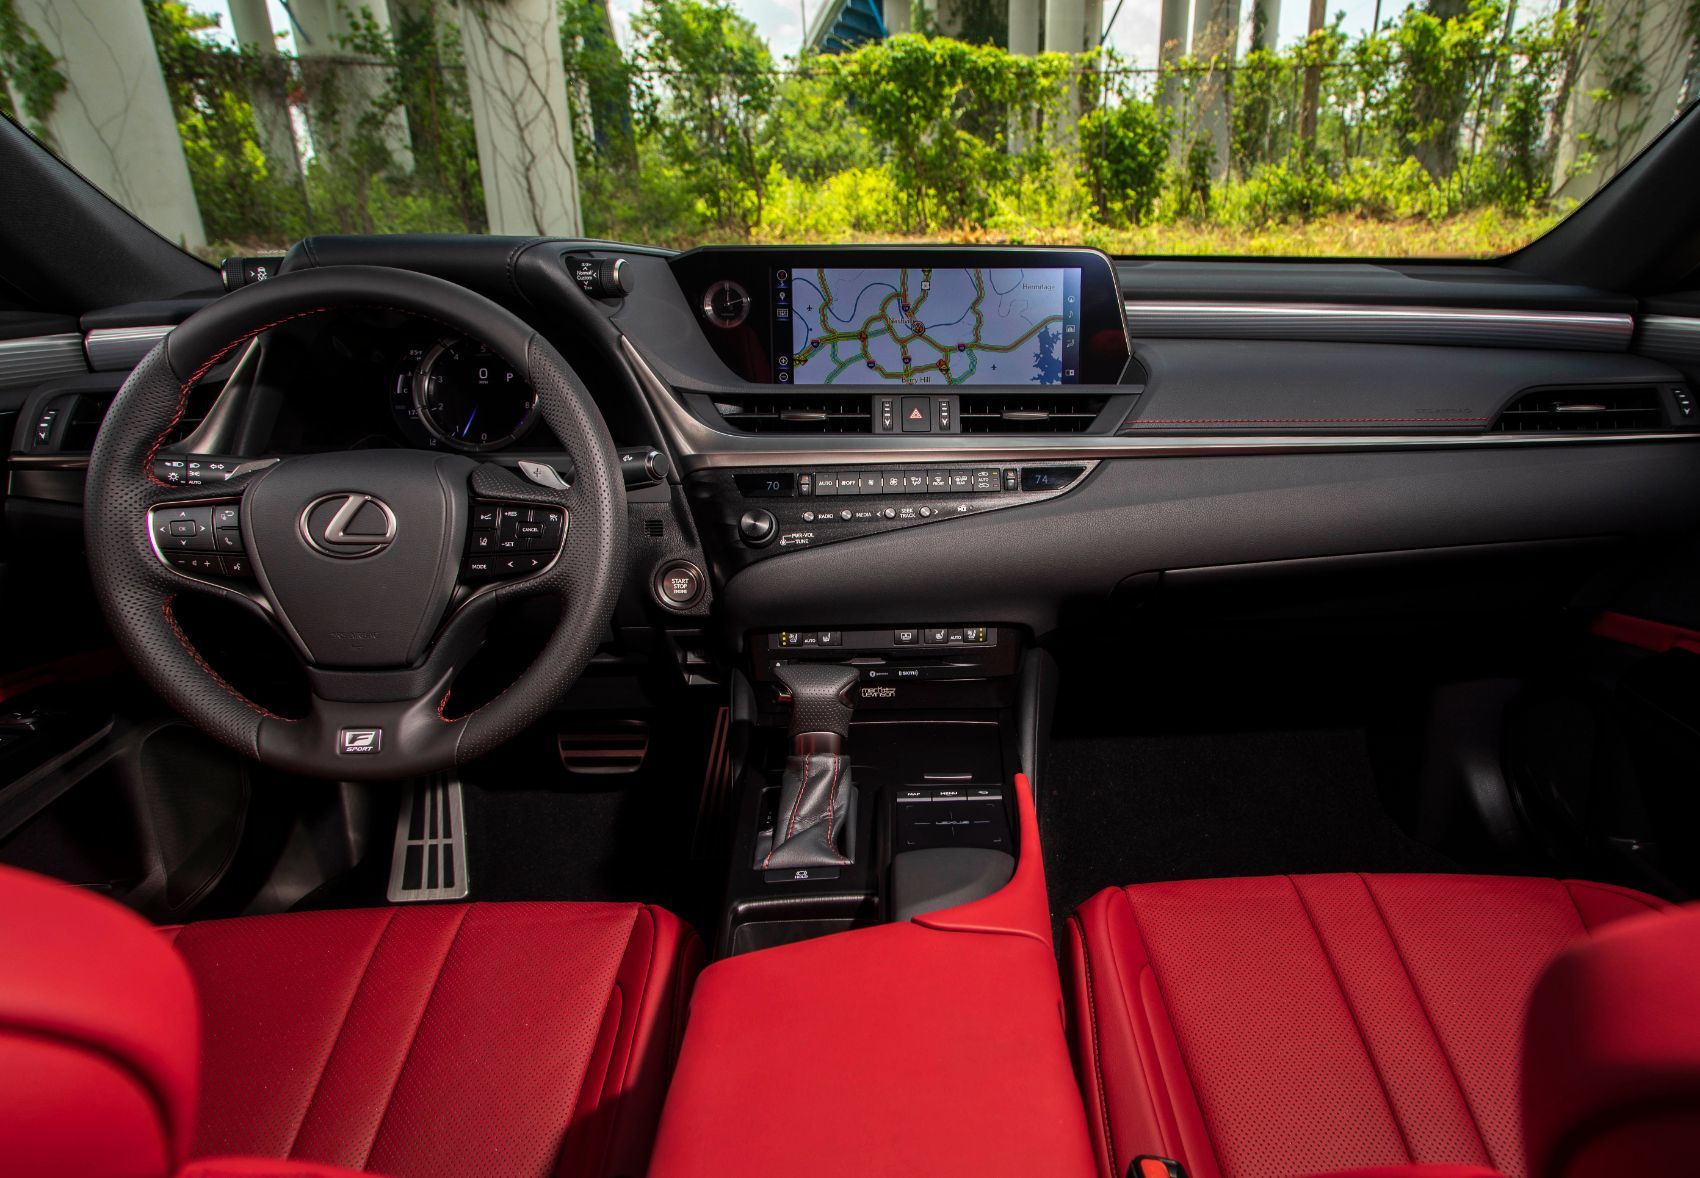 2020 Lexus ES 350 F Sport interior layout.